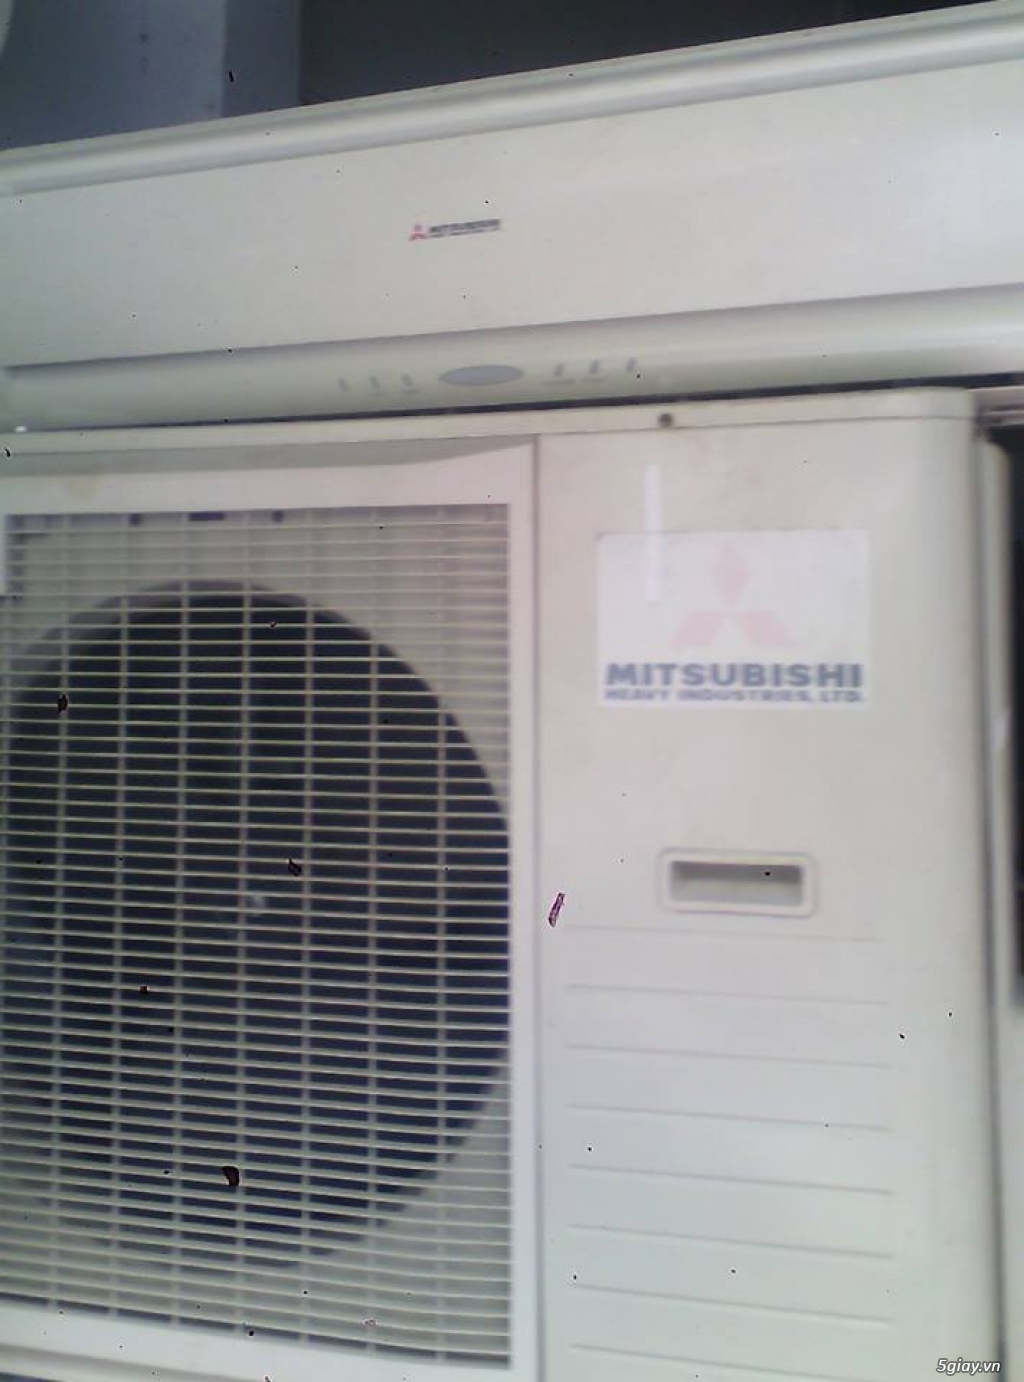 điện lạnh thiện nhân chuyên sửa chữa ,bảo trì ,mua bán .máy lạnh mitsubishi 2,5hp giá 8500000đ